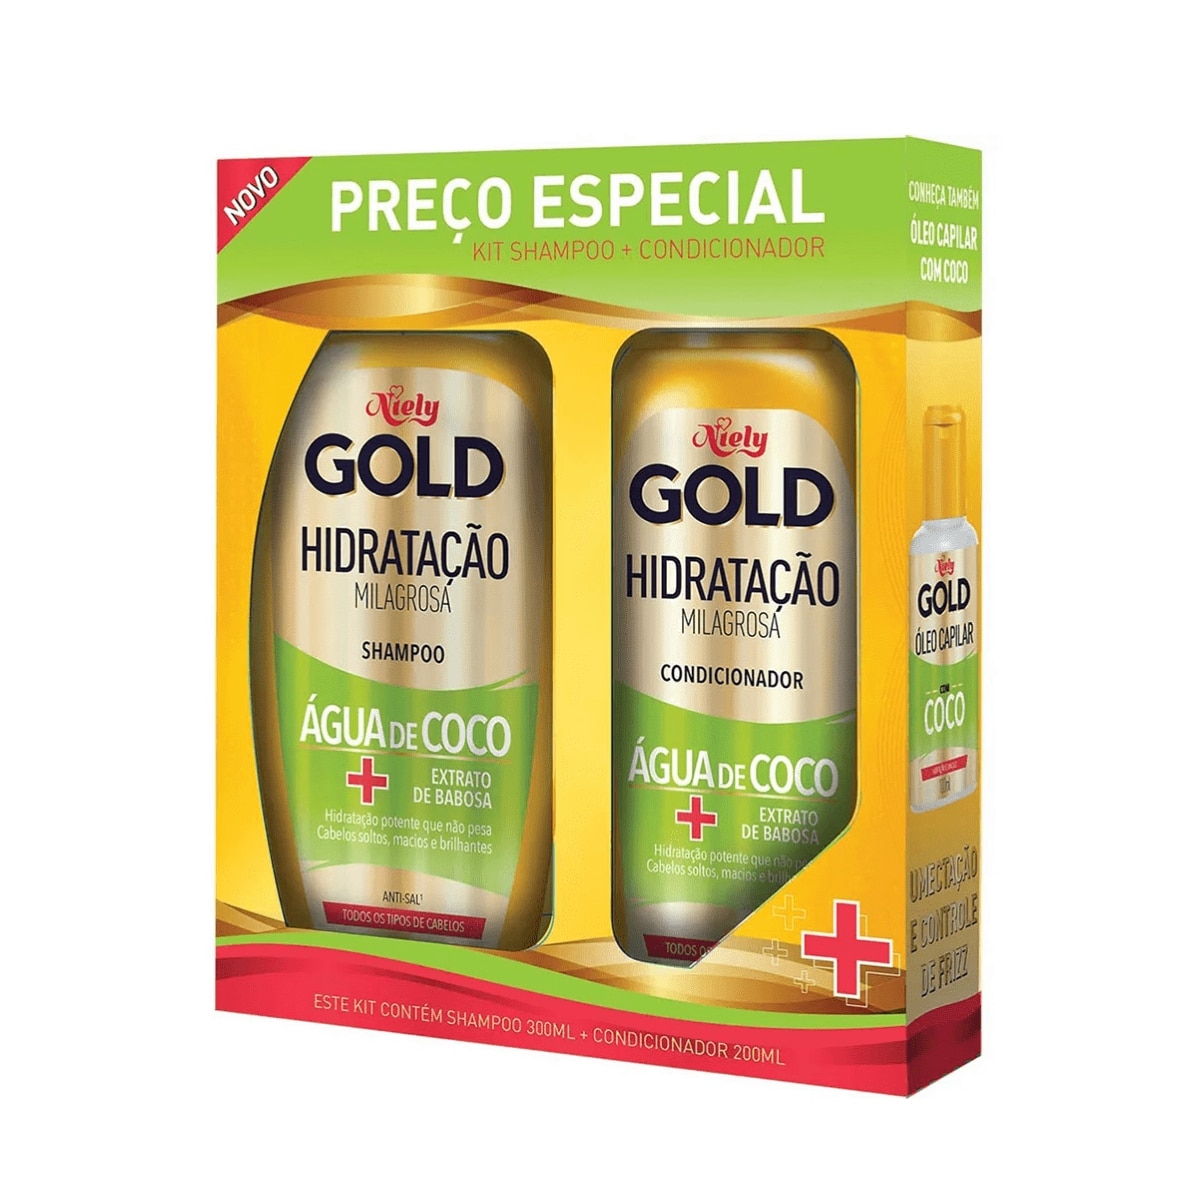 Kit Shampoo 300ml  + Condicionador Niely Gold Hidratacao Agua de Coco 200ml